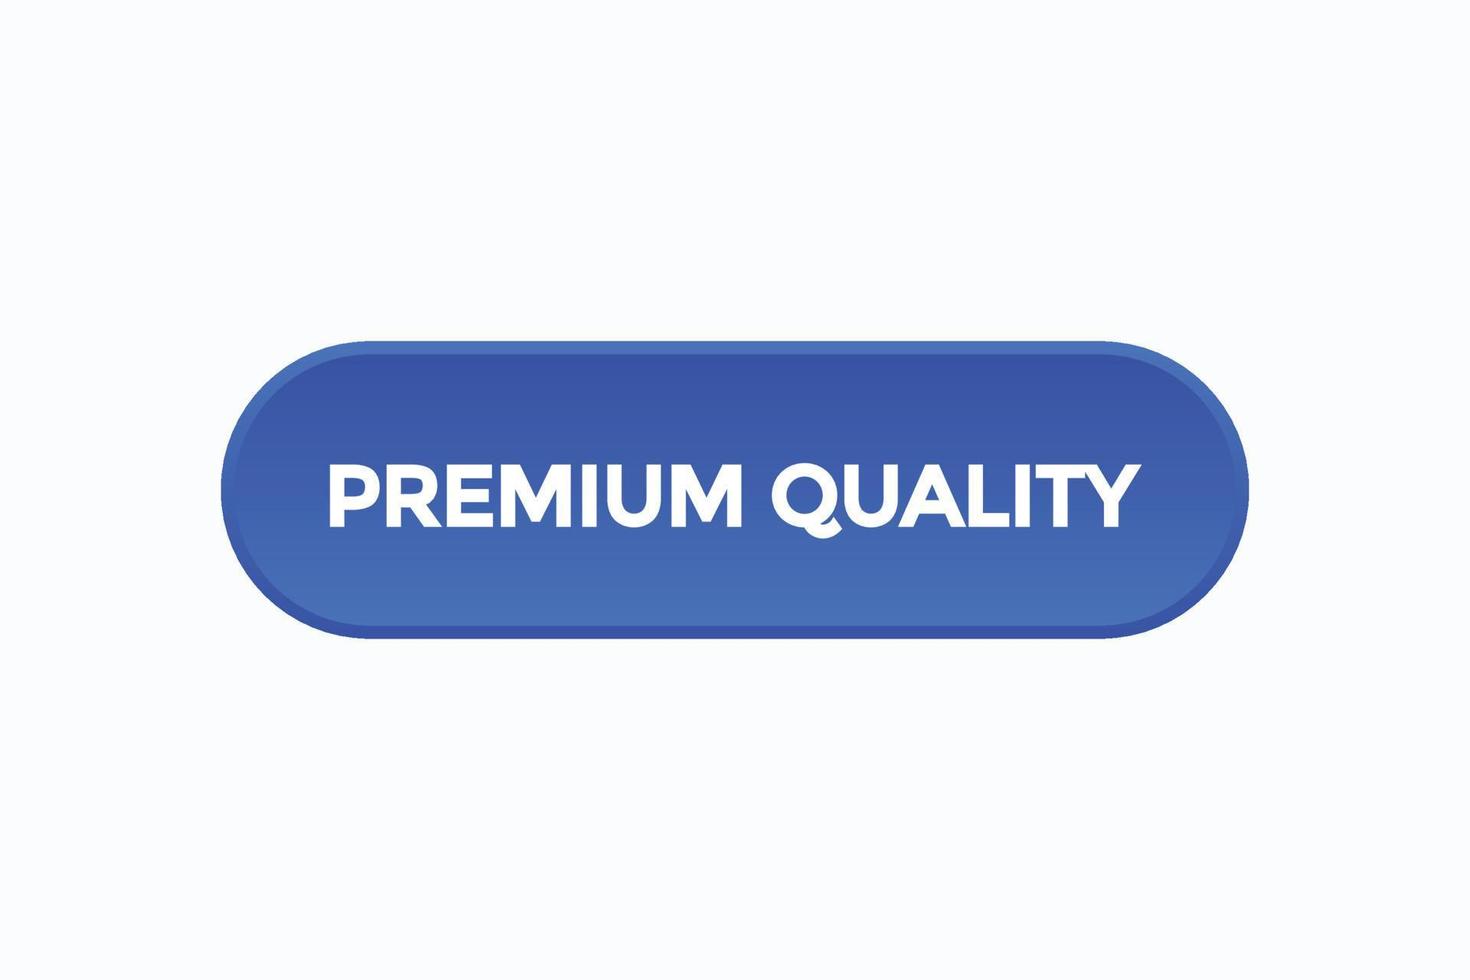 Basic RGBpremium quality button vectors.sign label speech bubble premium quality vector